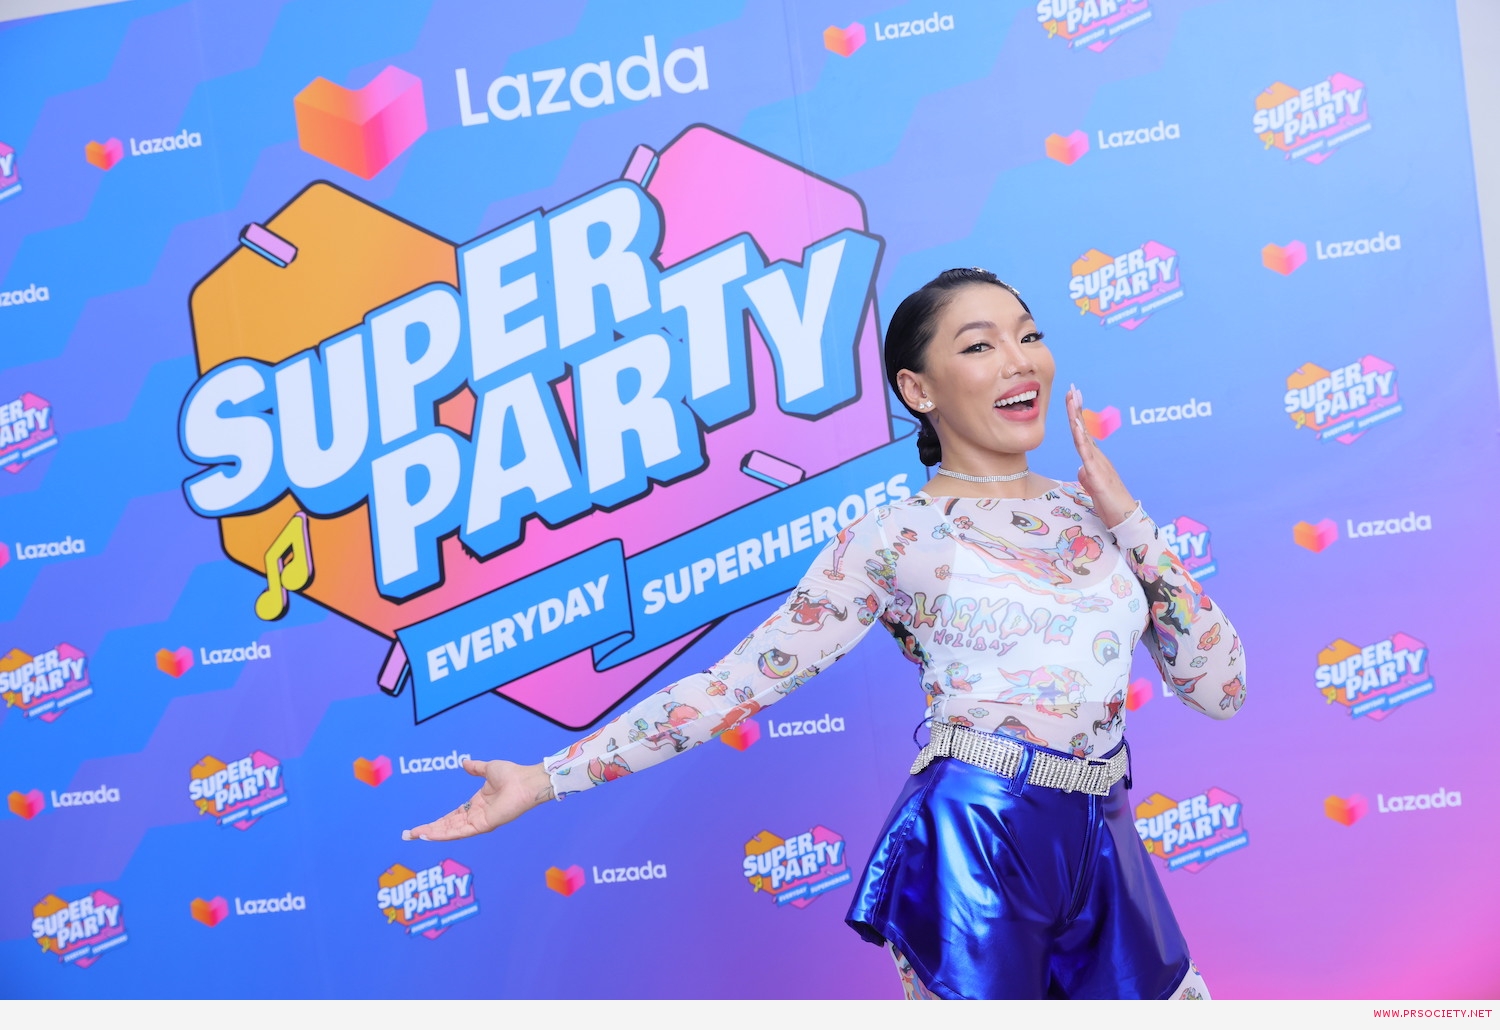 Da_Lazada Super Party (3)